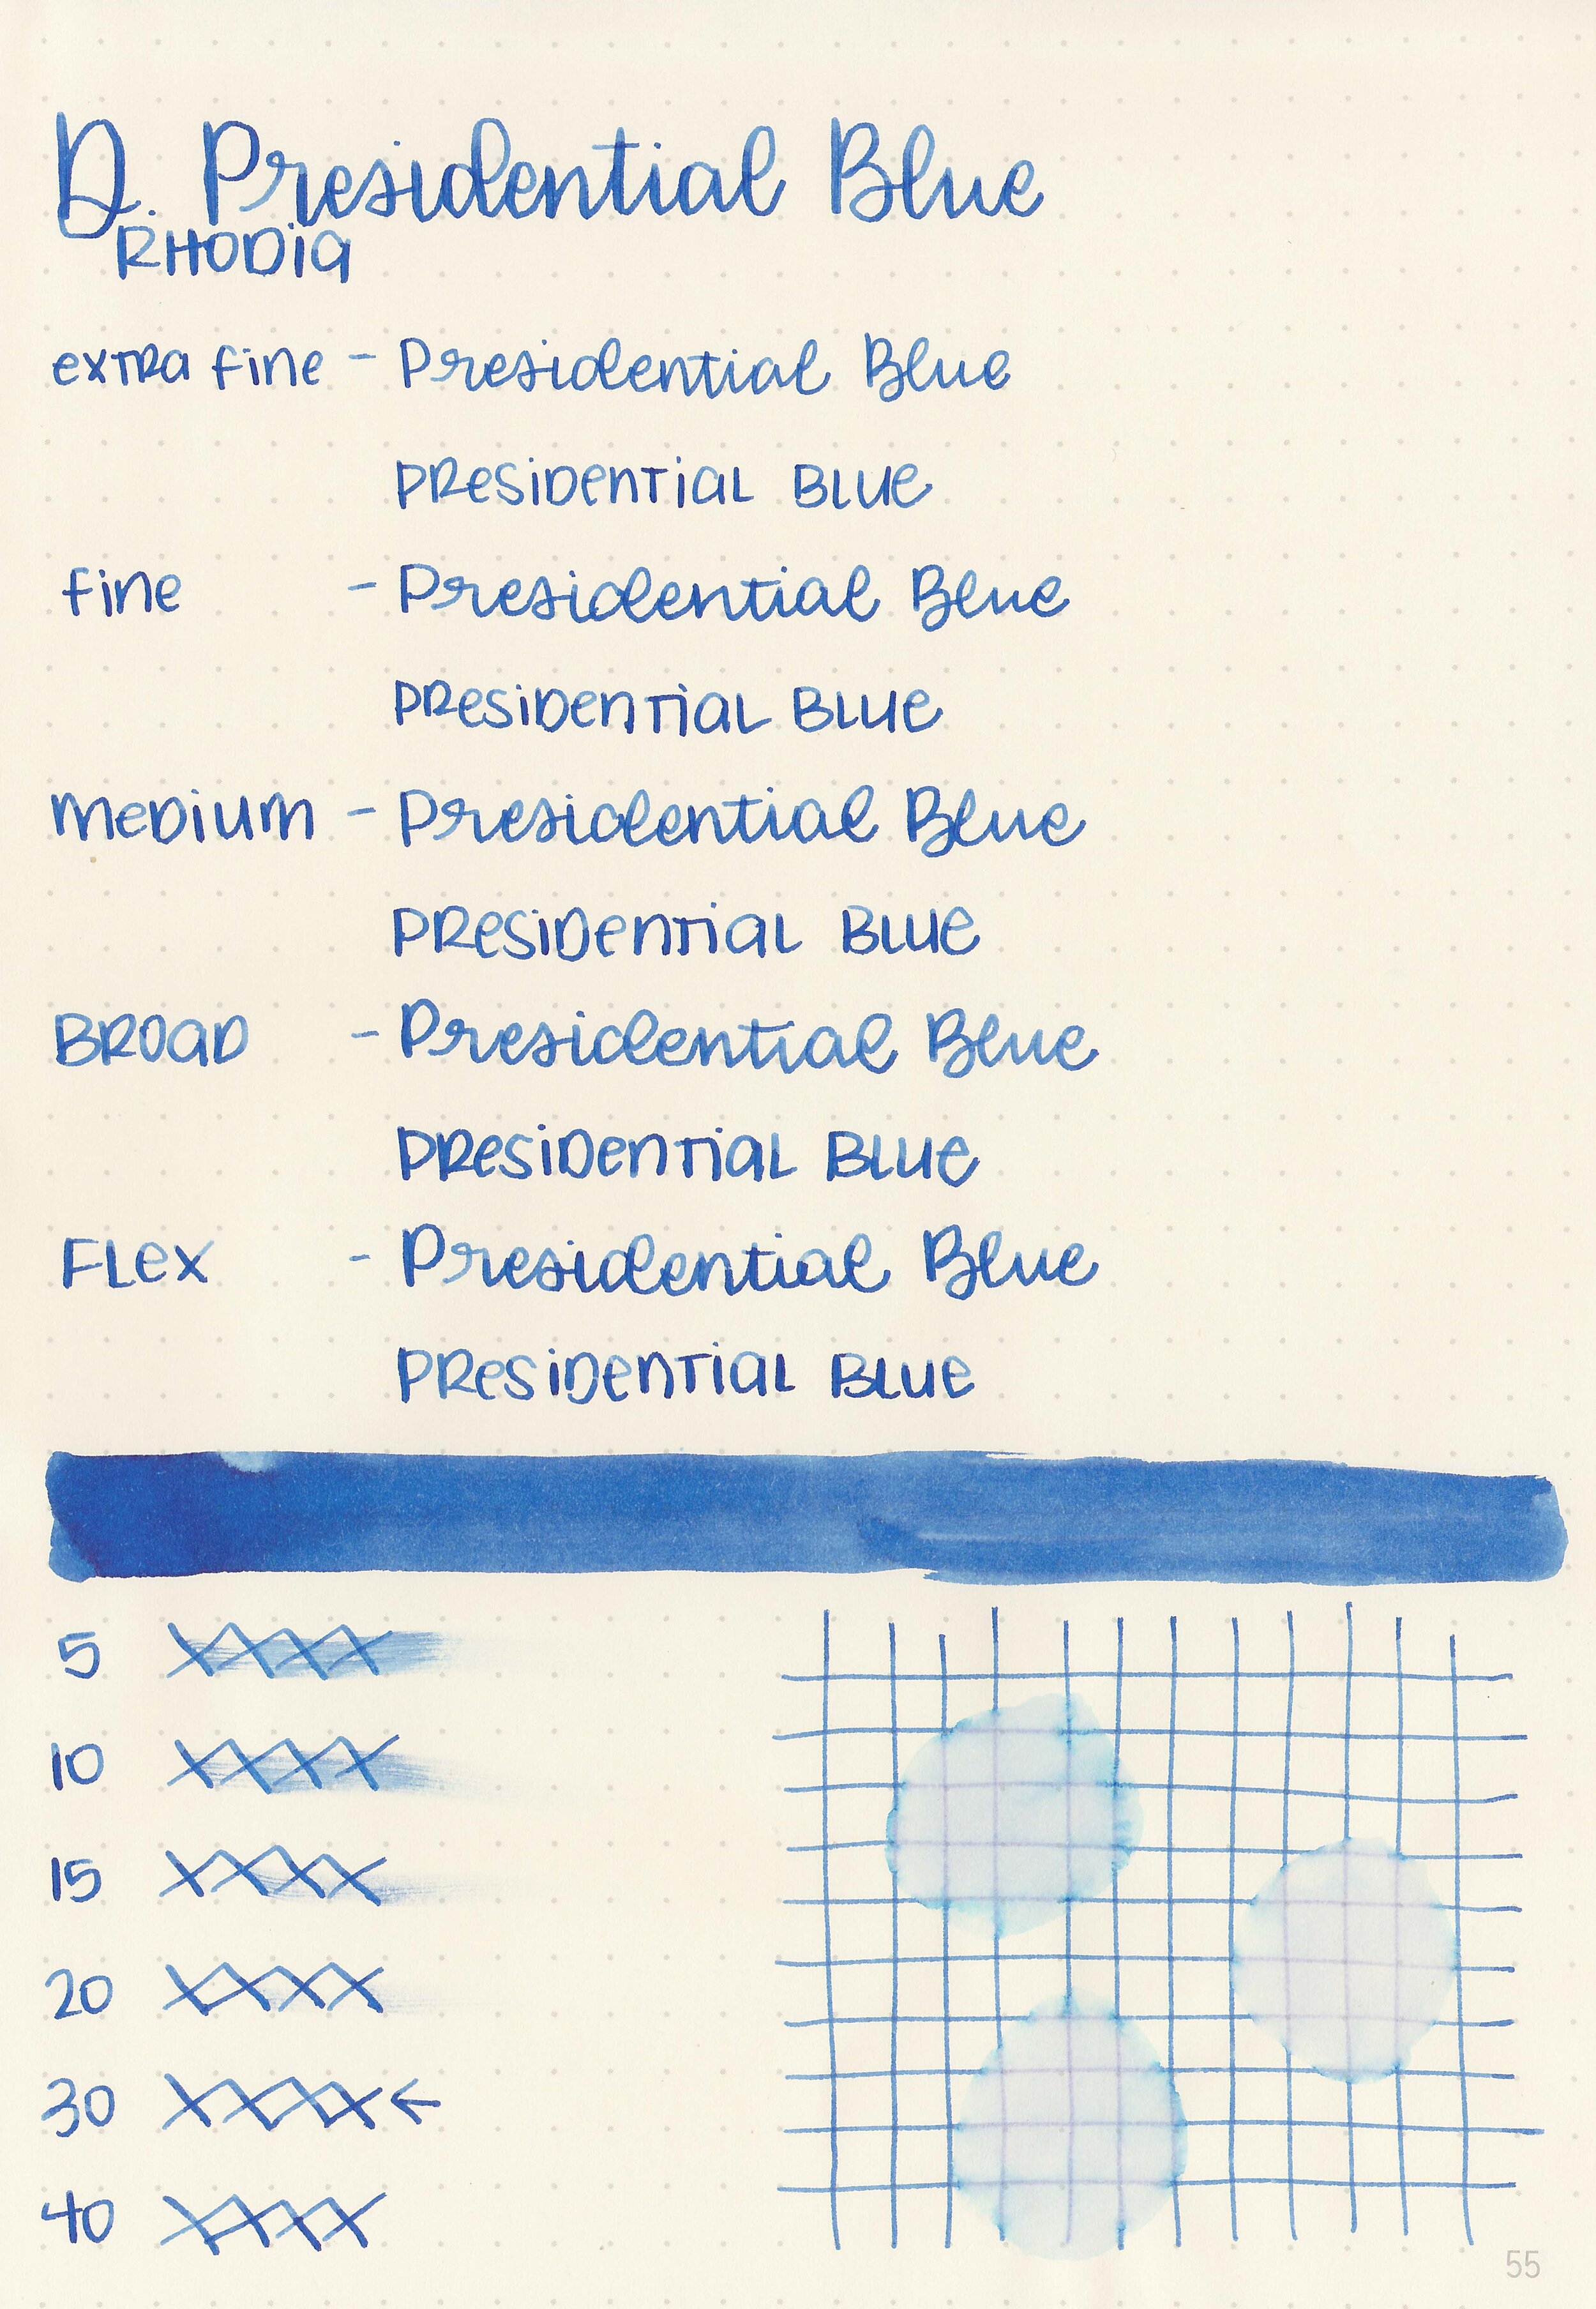 d-presidential-blue-5.jpg